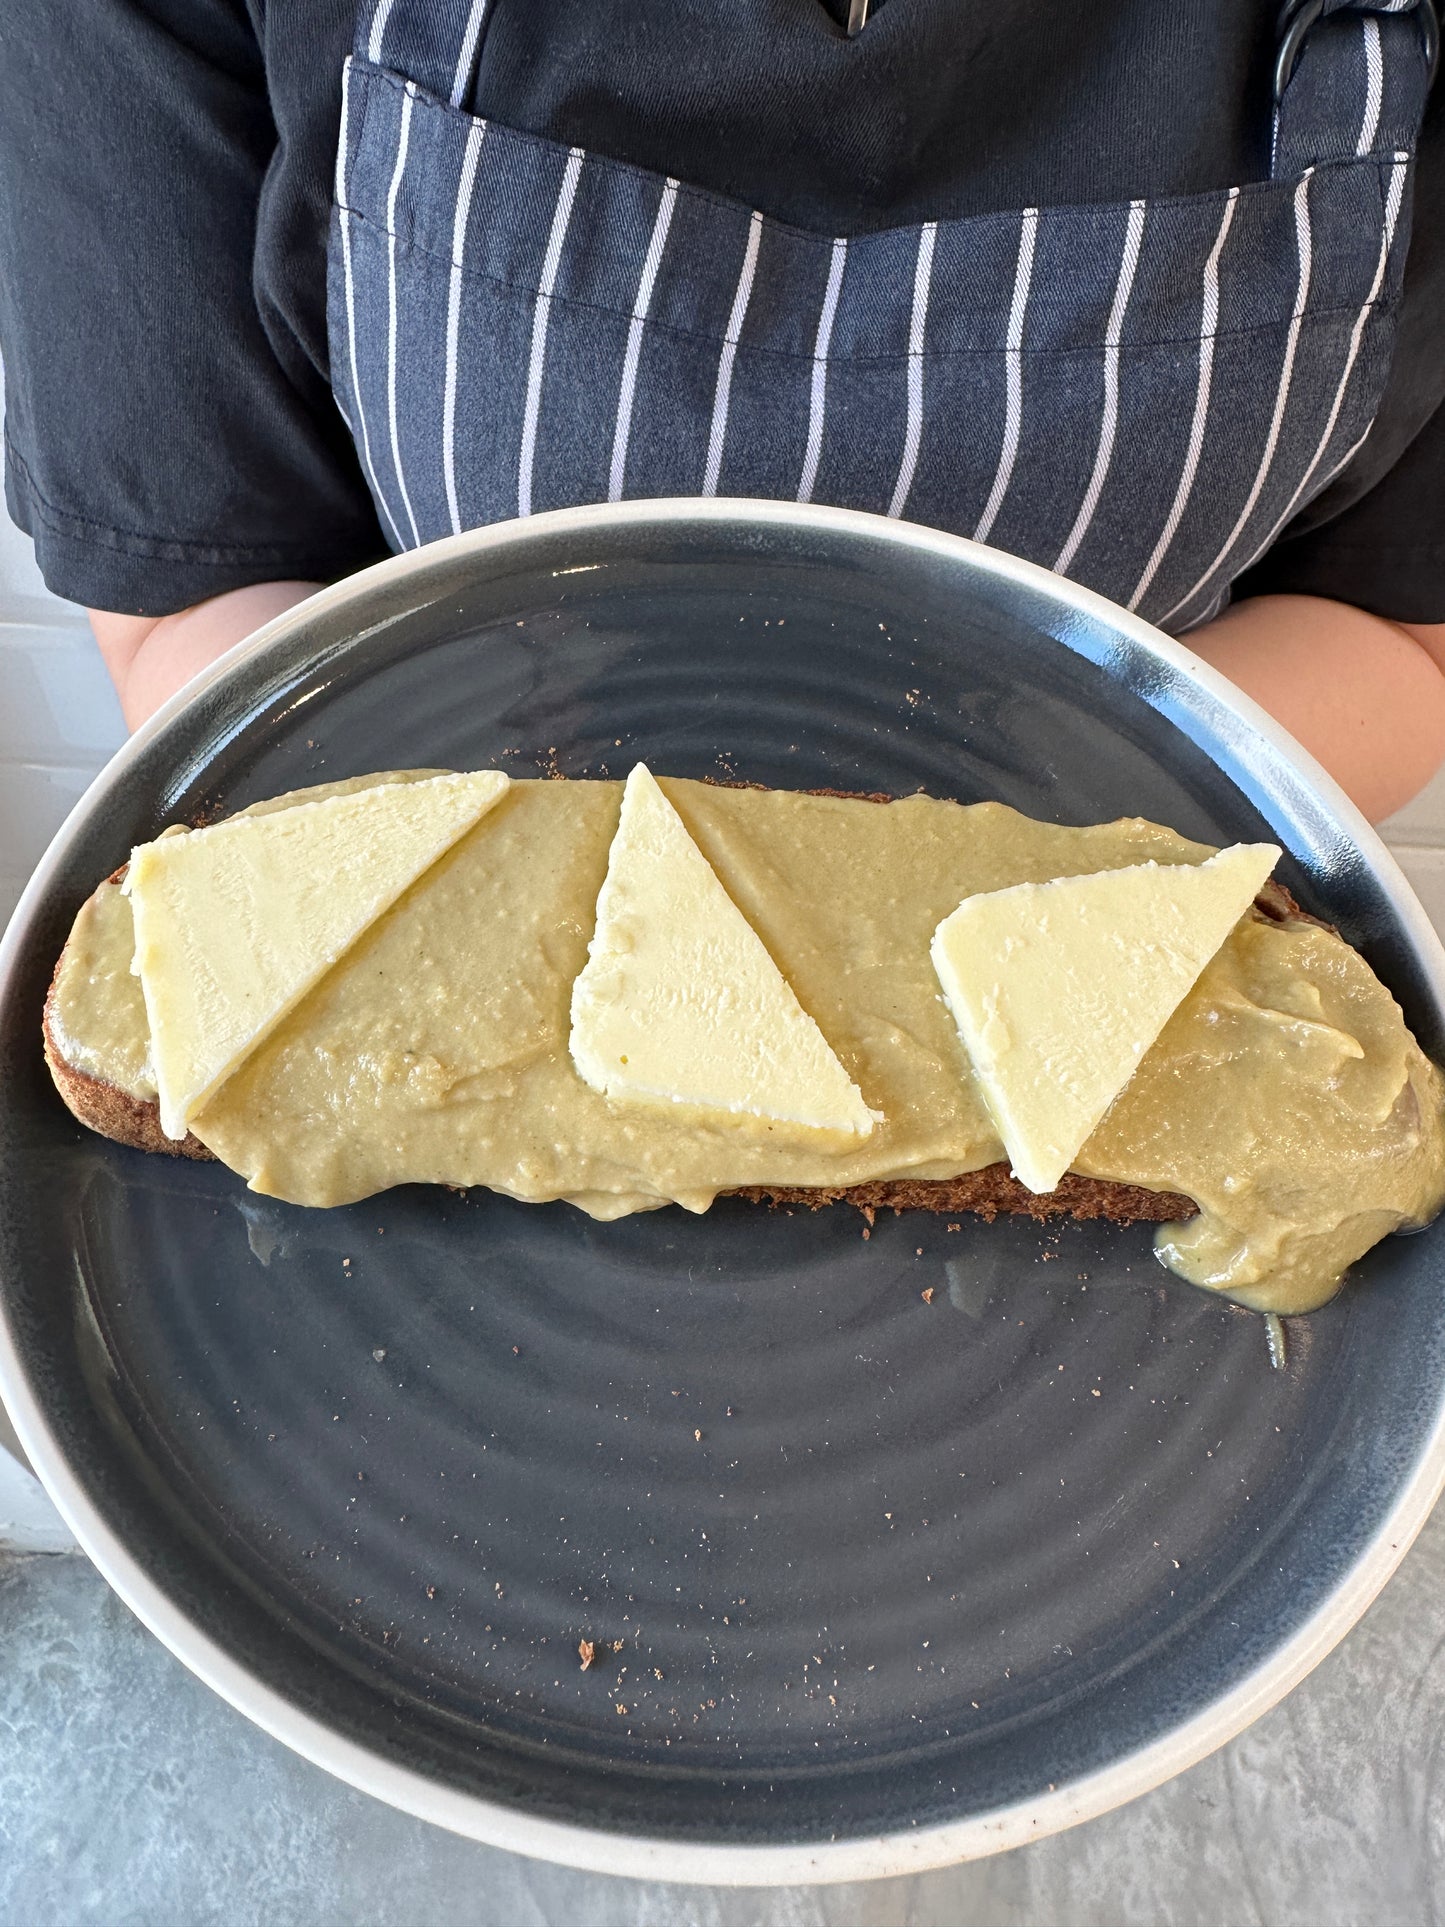 Kaya Butter Toast